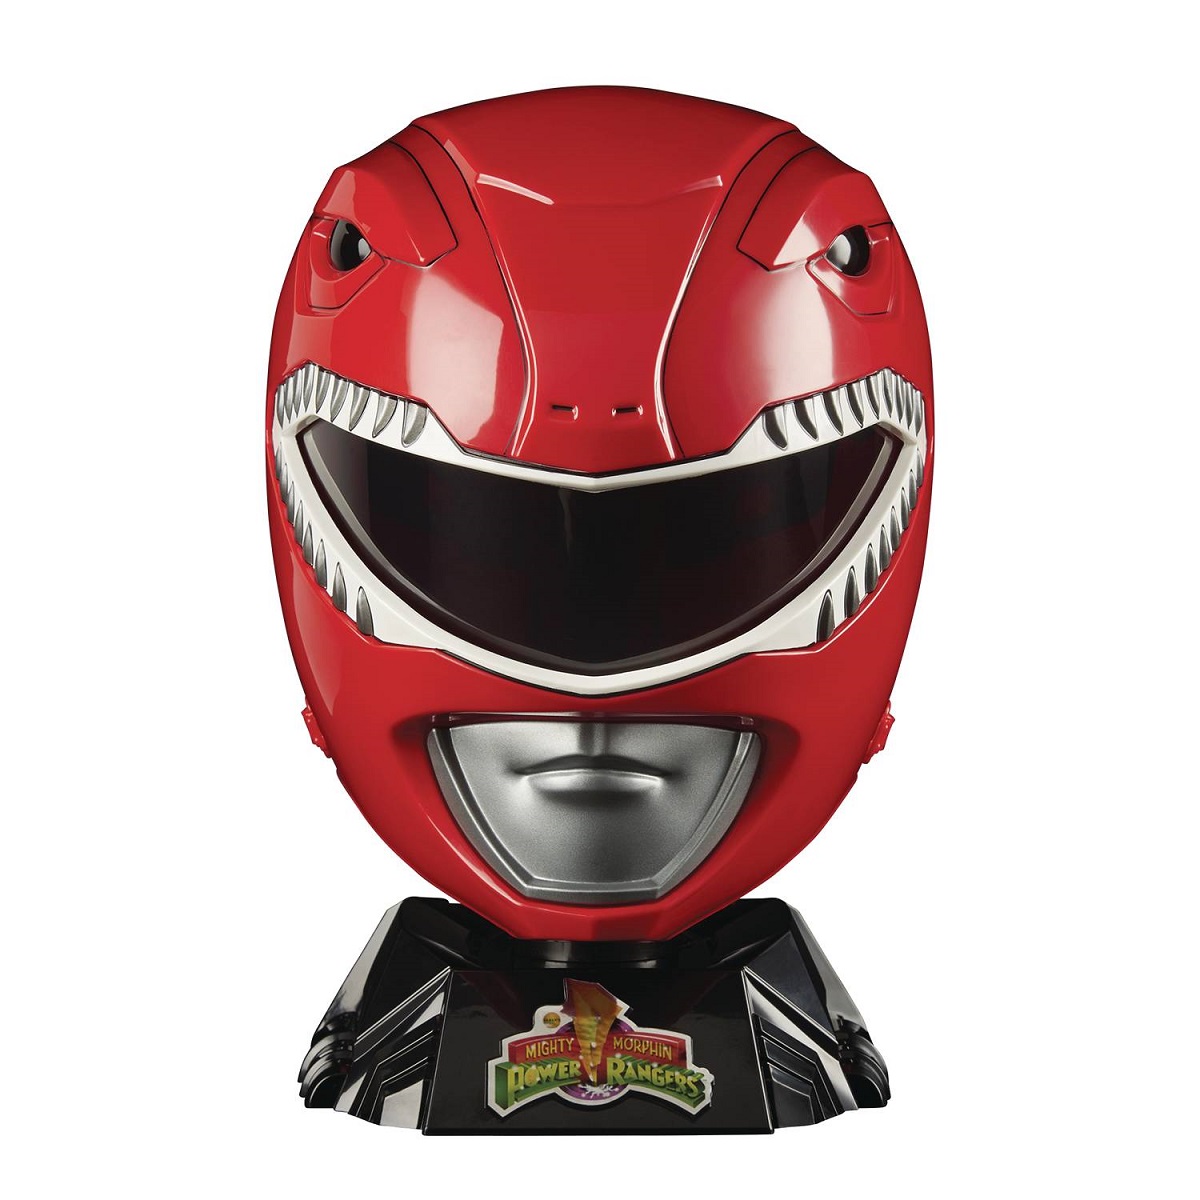 Power Rangers Lighting Collection Red Ranger Helmet Prop Replica 